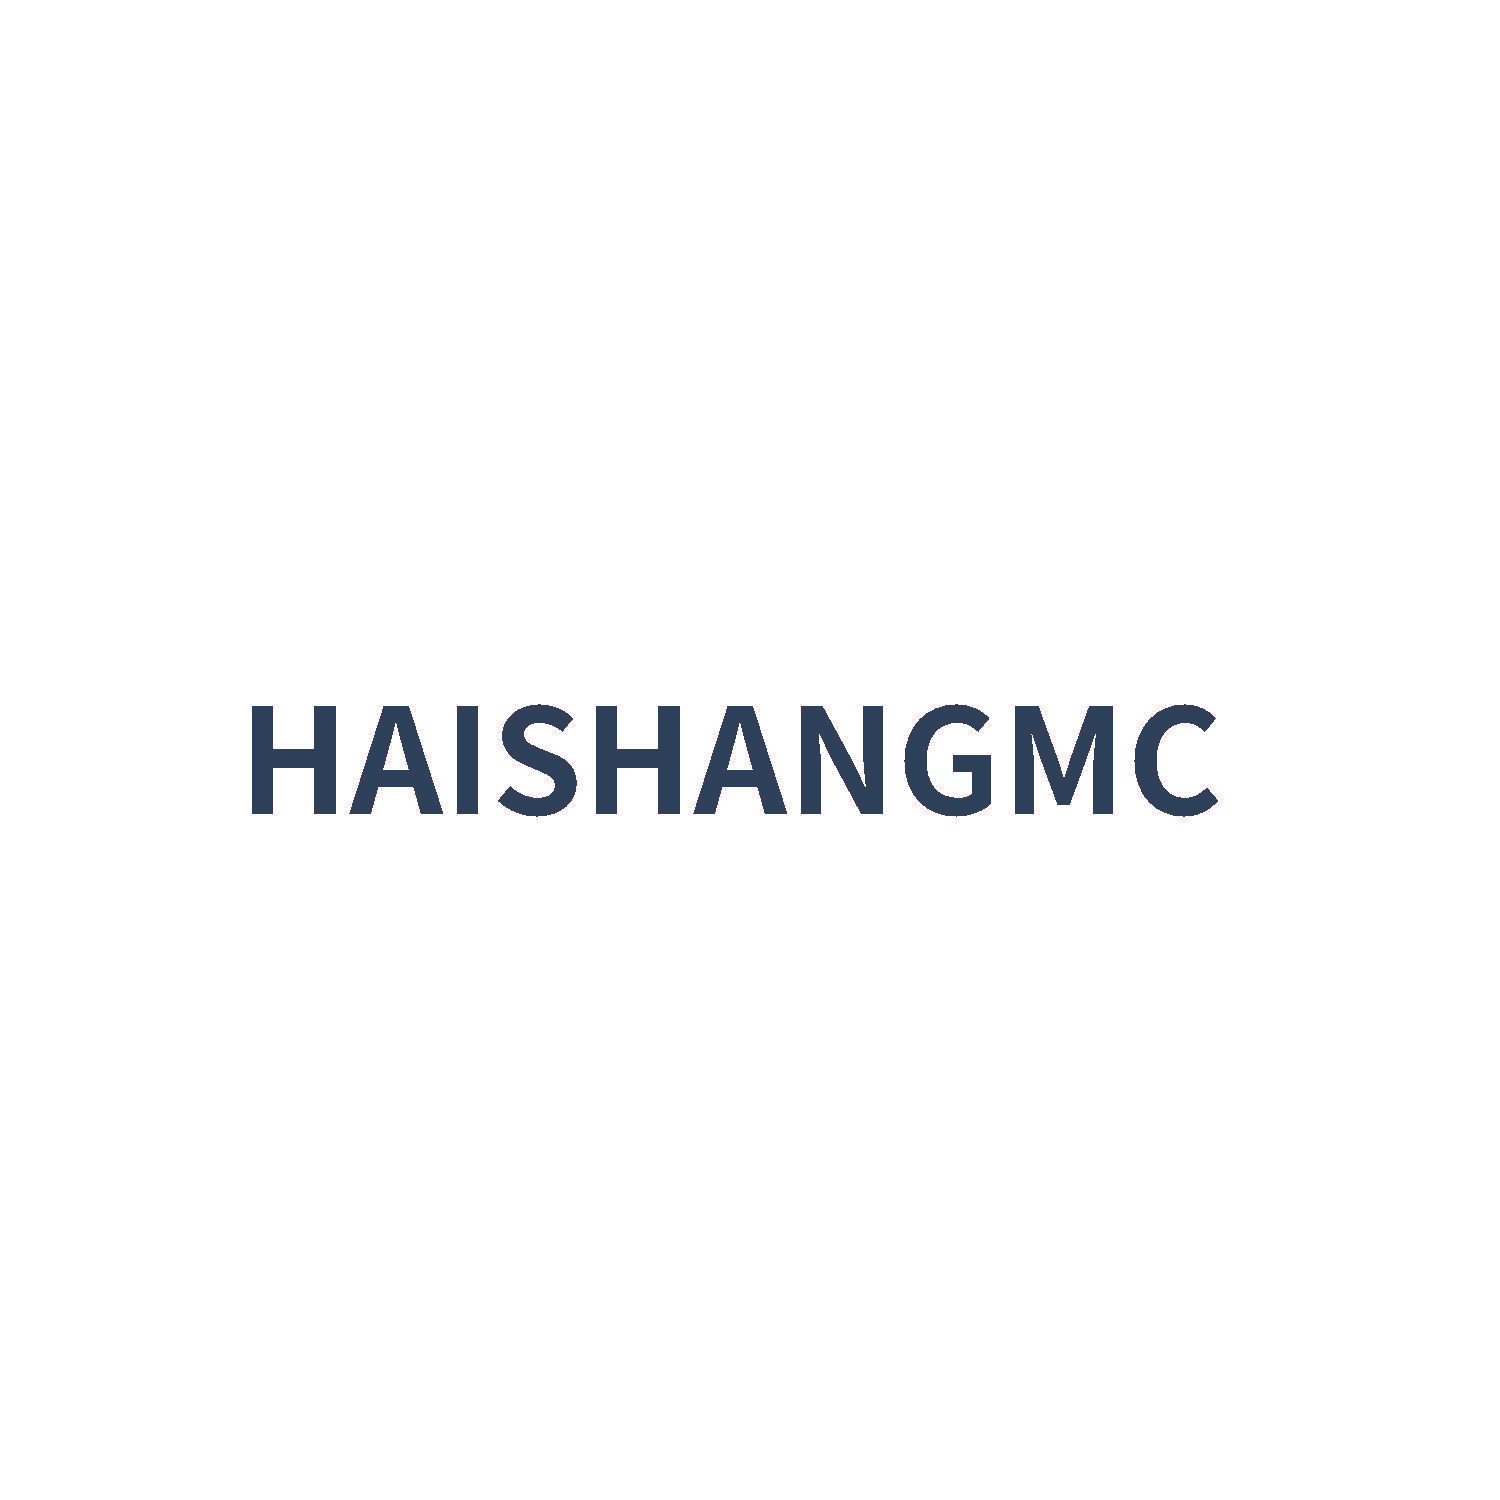 HAISHANGMC